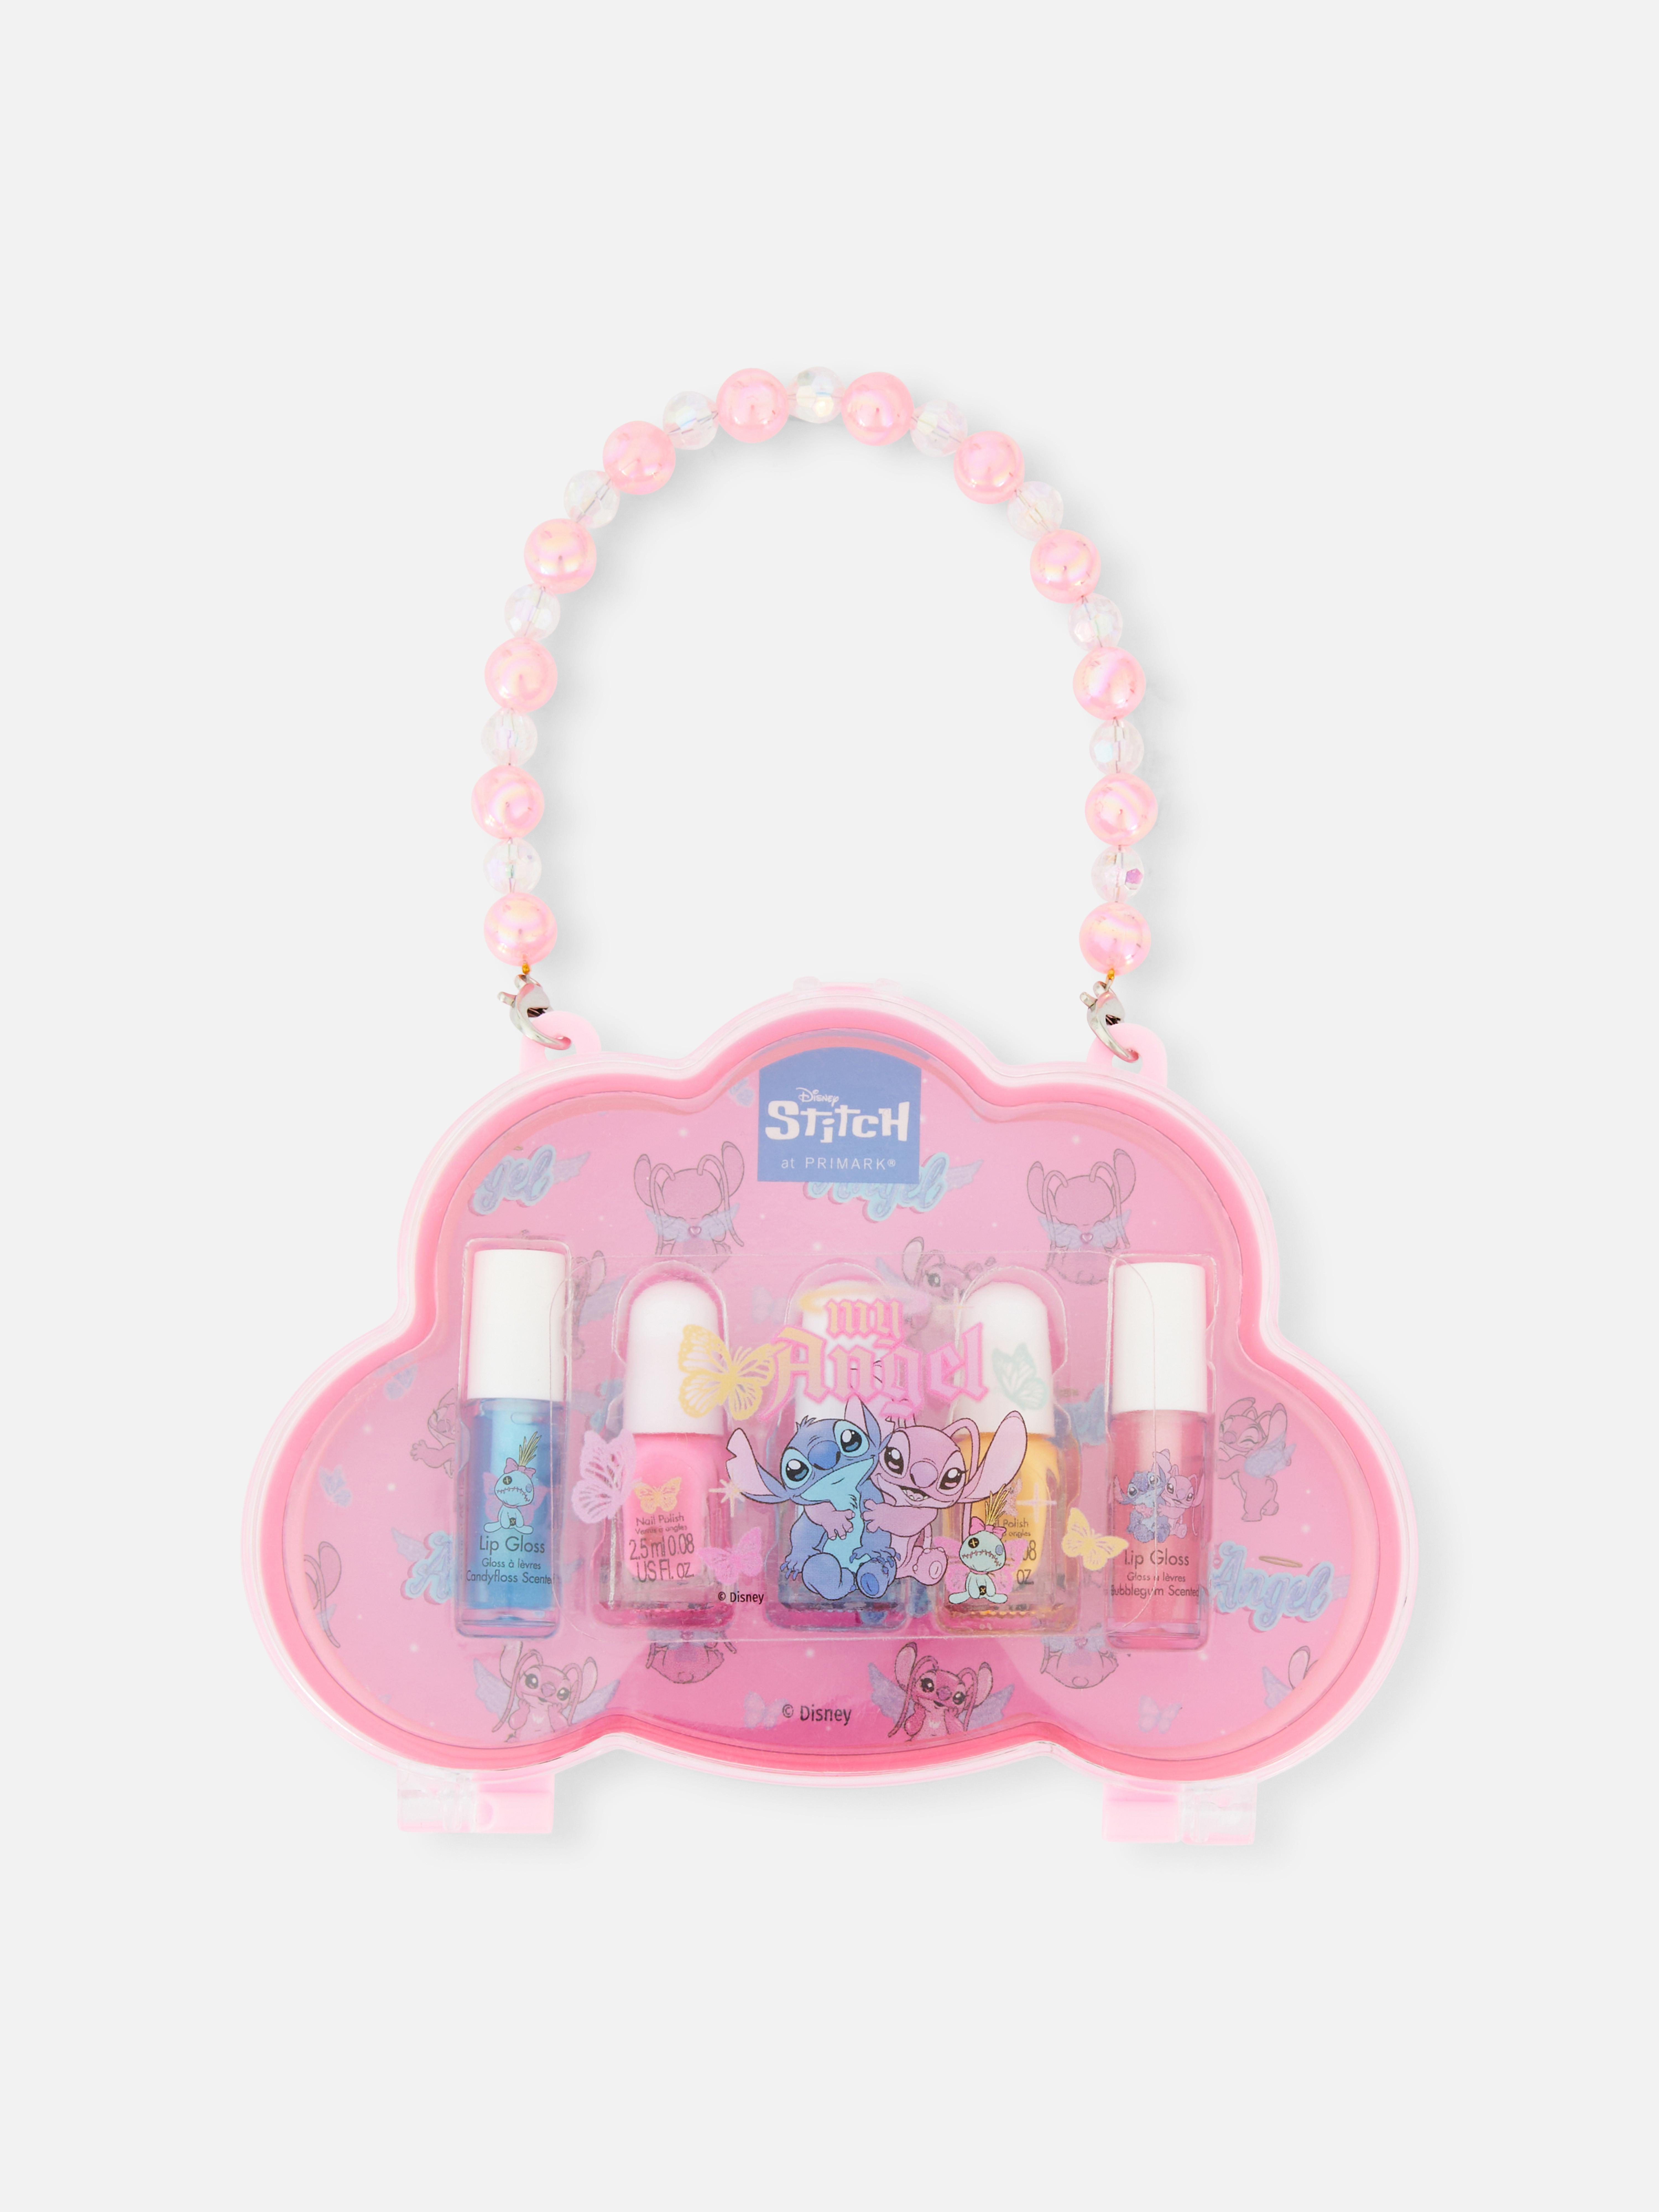 Disney’s Lilo & Stitch Lip Gloss and Nail Polish Set